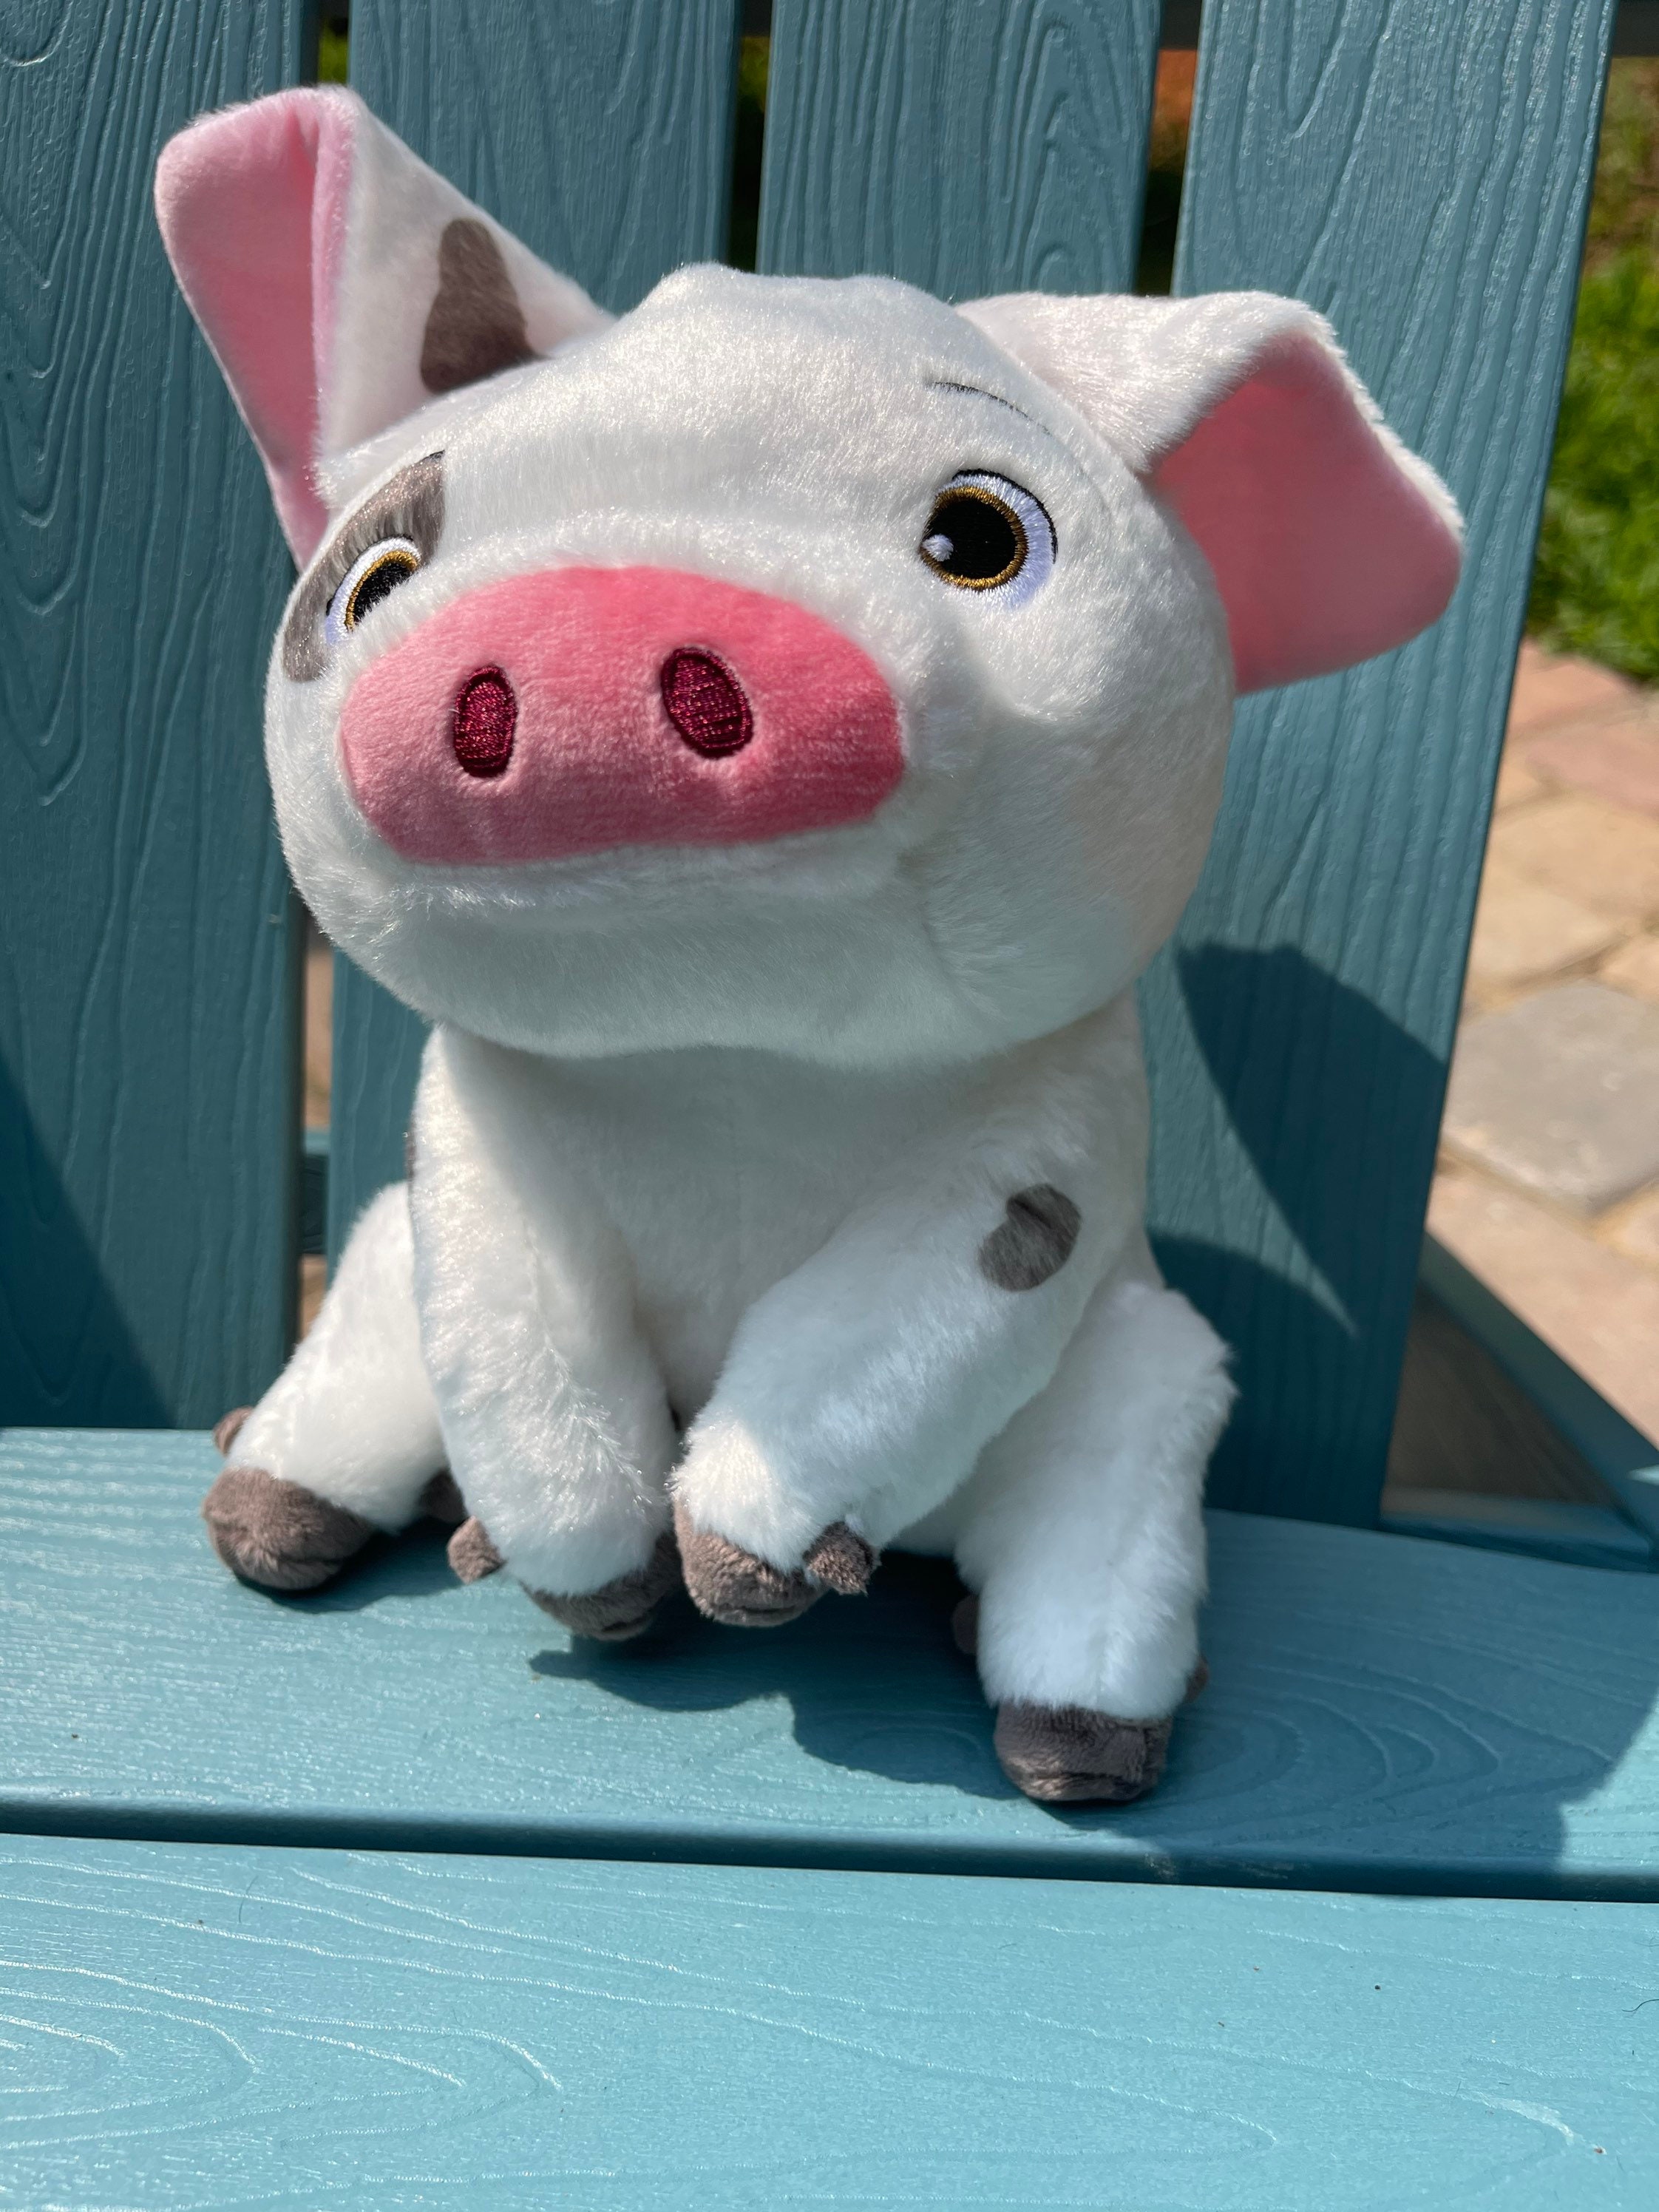 Moana Pet Pig Pua Super Soft Doll Stuffed Animal Plush Toy Kids Gift 9" 